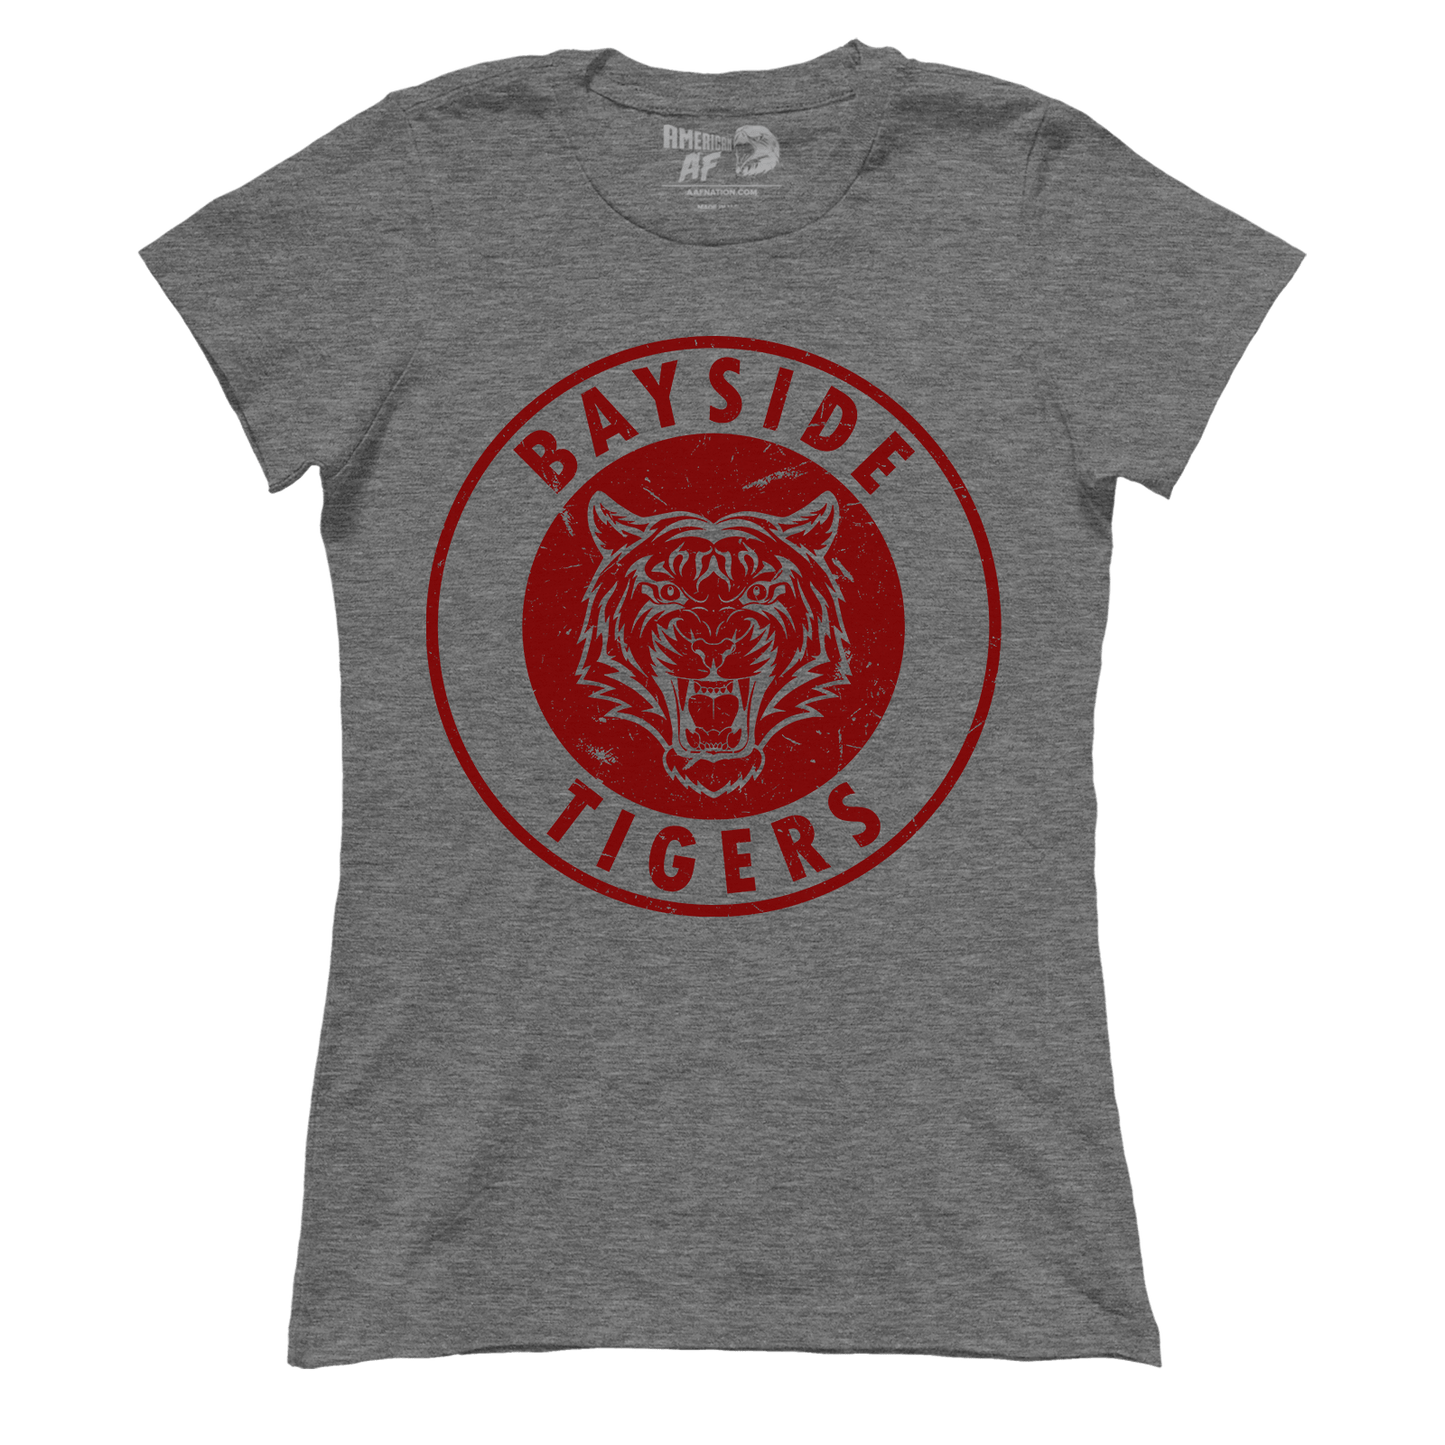 Bayside Tigers (Ladies)